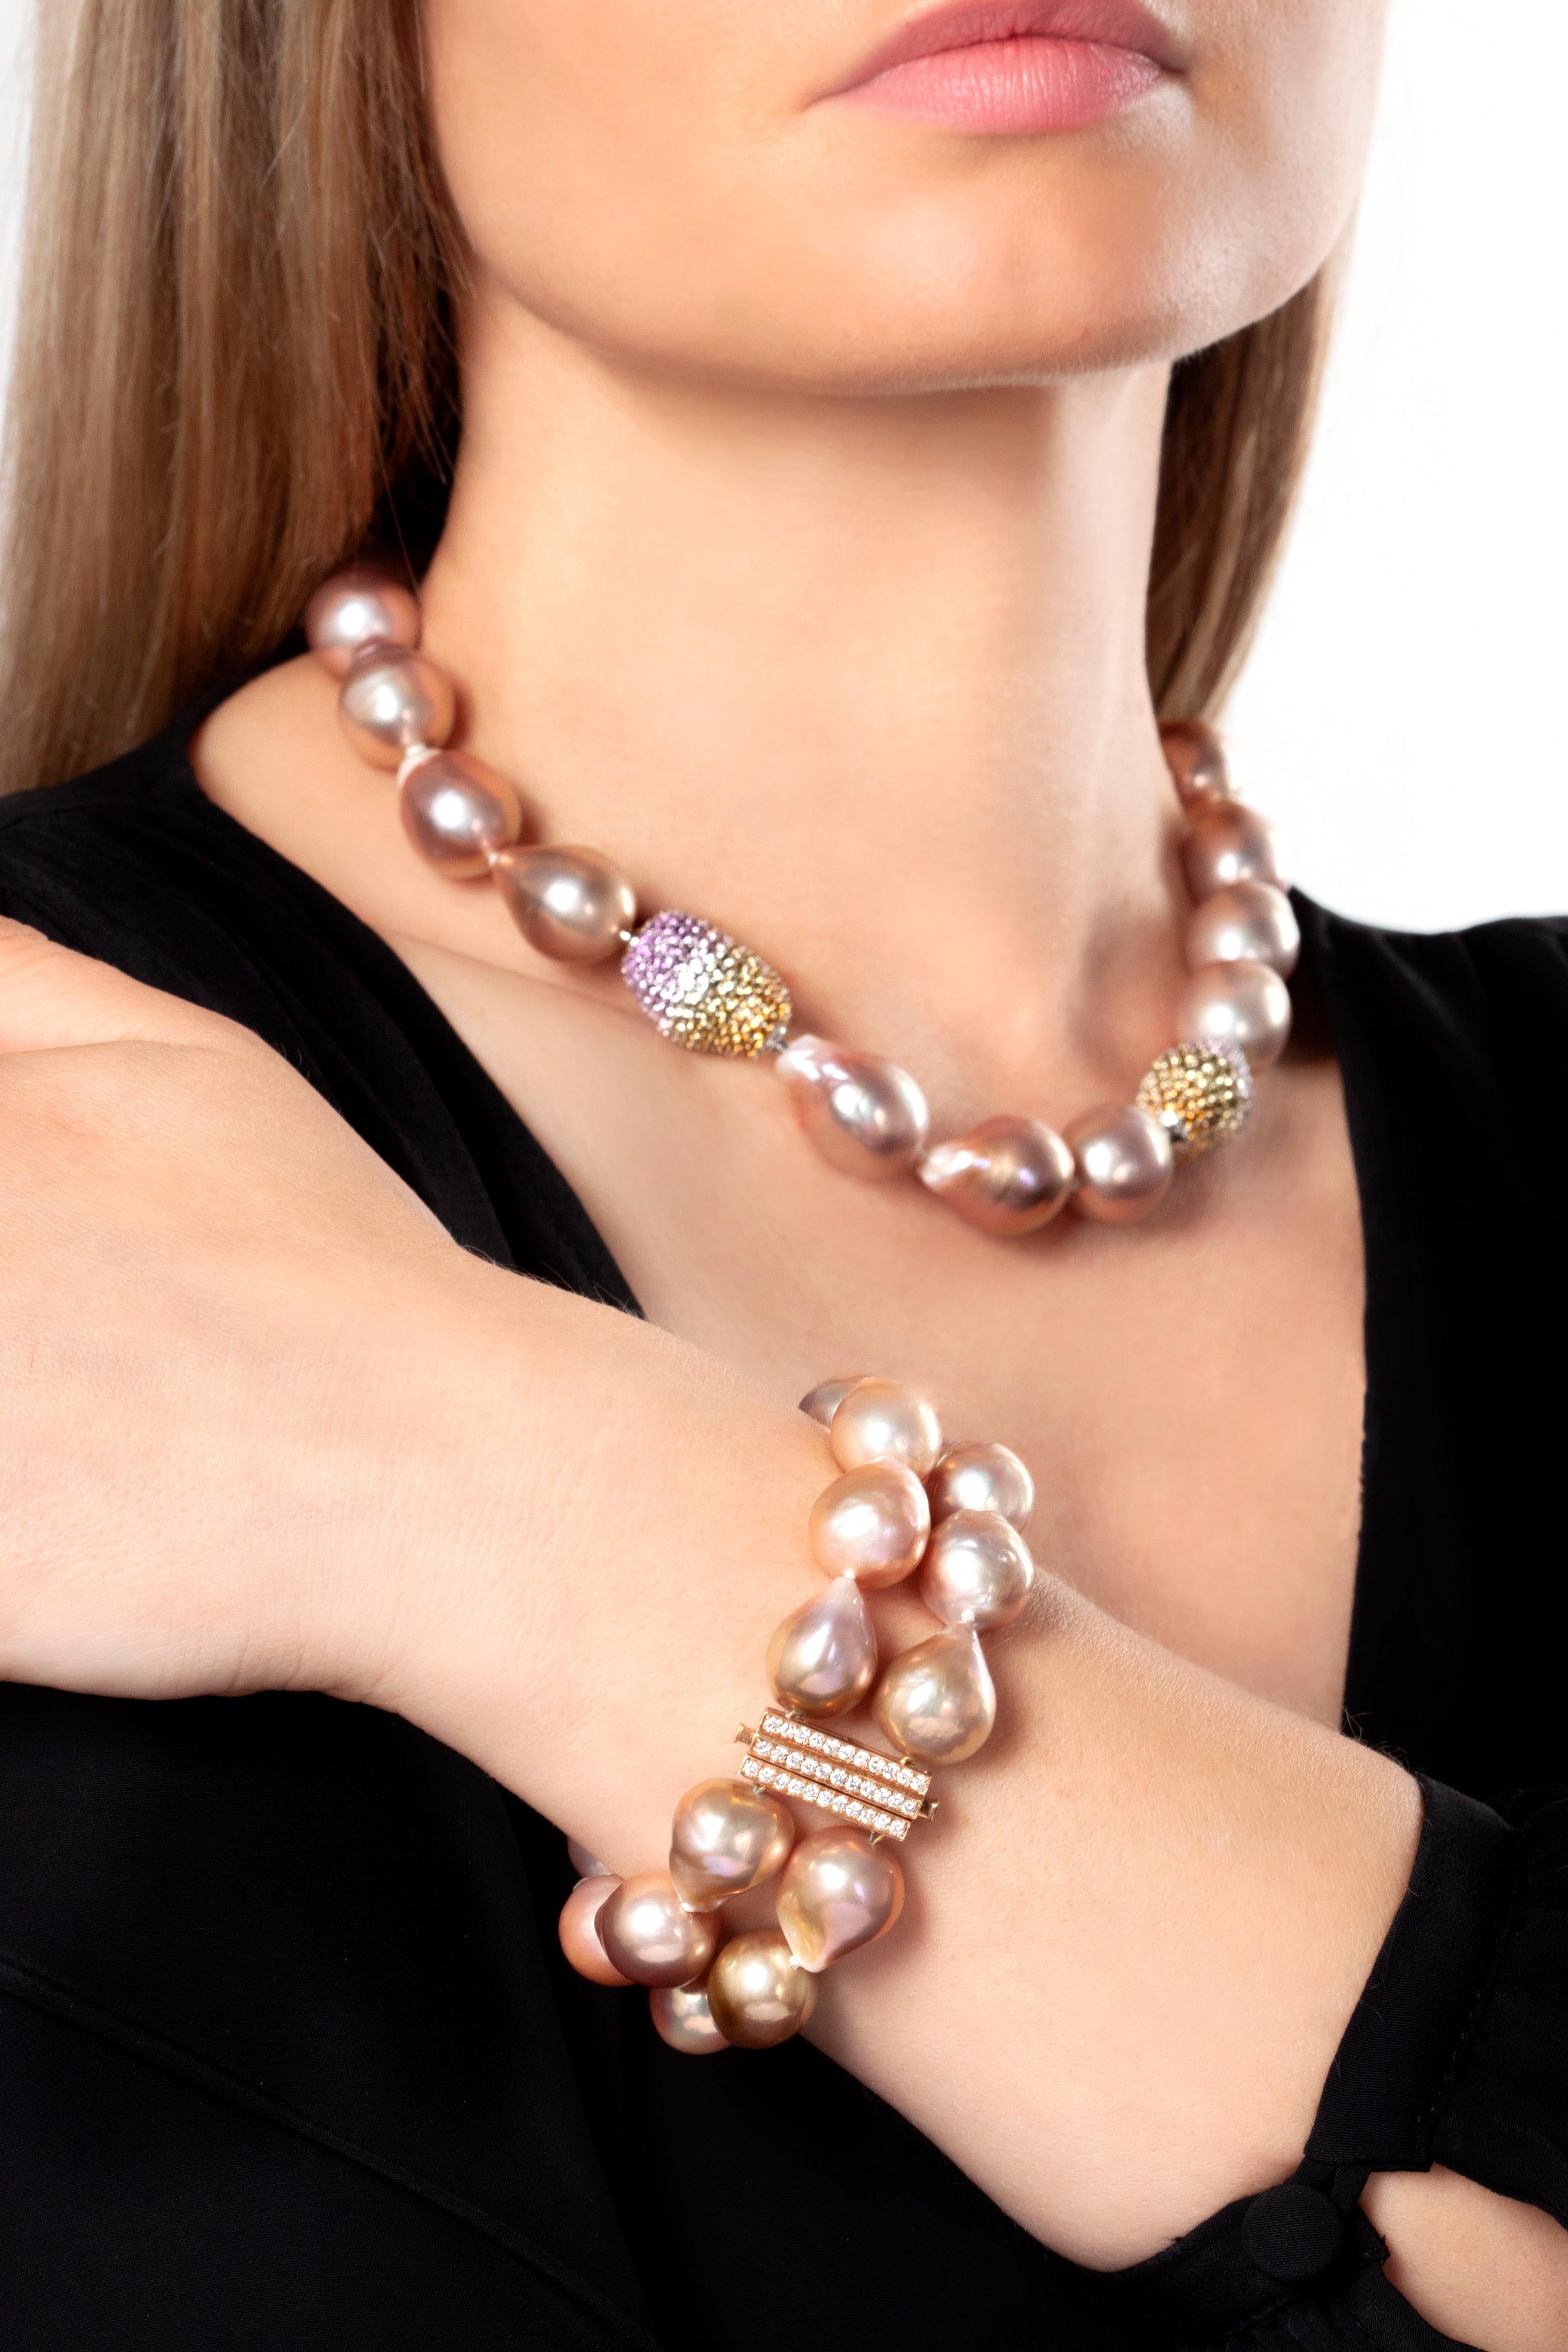 Ce bracelet hypnotique de Yoko London comporte deux rangées de perles baroques roses uniques. Chaque perle baroque est totalement unique et ce design met parfaitement en valeur leur allure et leur mystique. Les riches teintes roses des perles sont